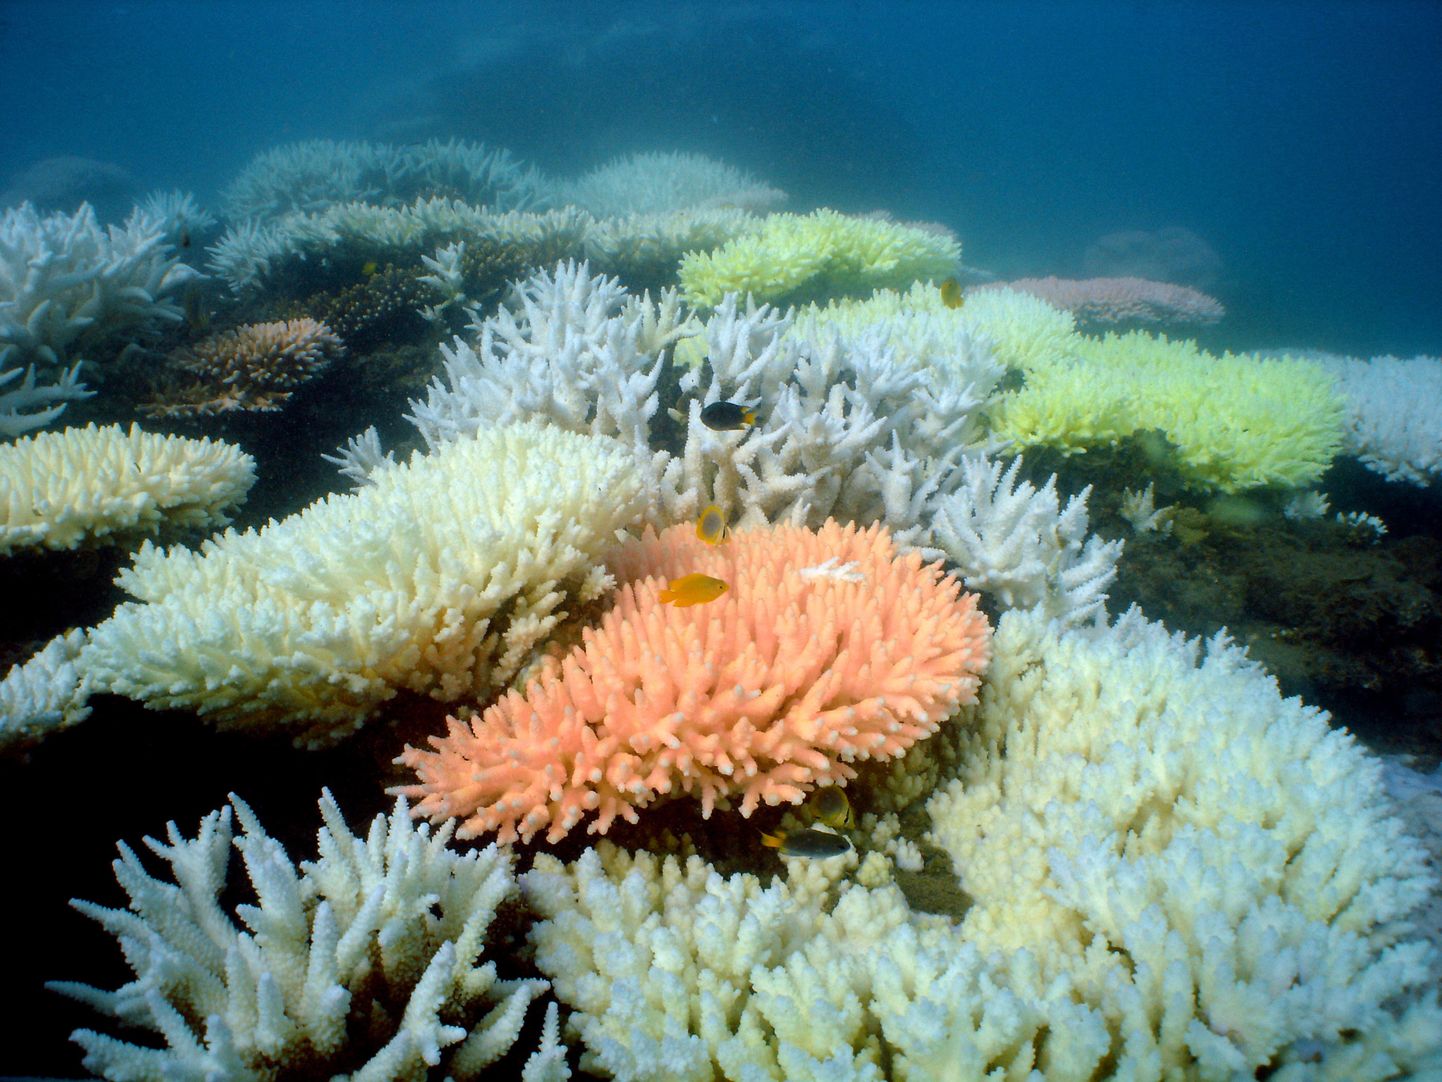 Korallrahud on ühed kõige liigirikkamad paigad Maal. Korallide hukk tähendab selle õrnas tasakaaluse püsiva ökosüsteemi kadumist.